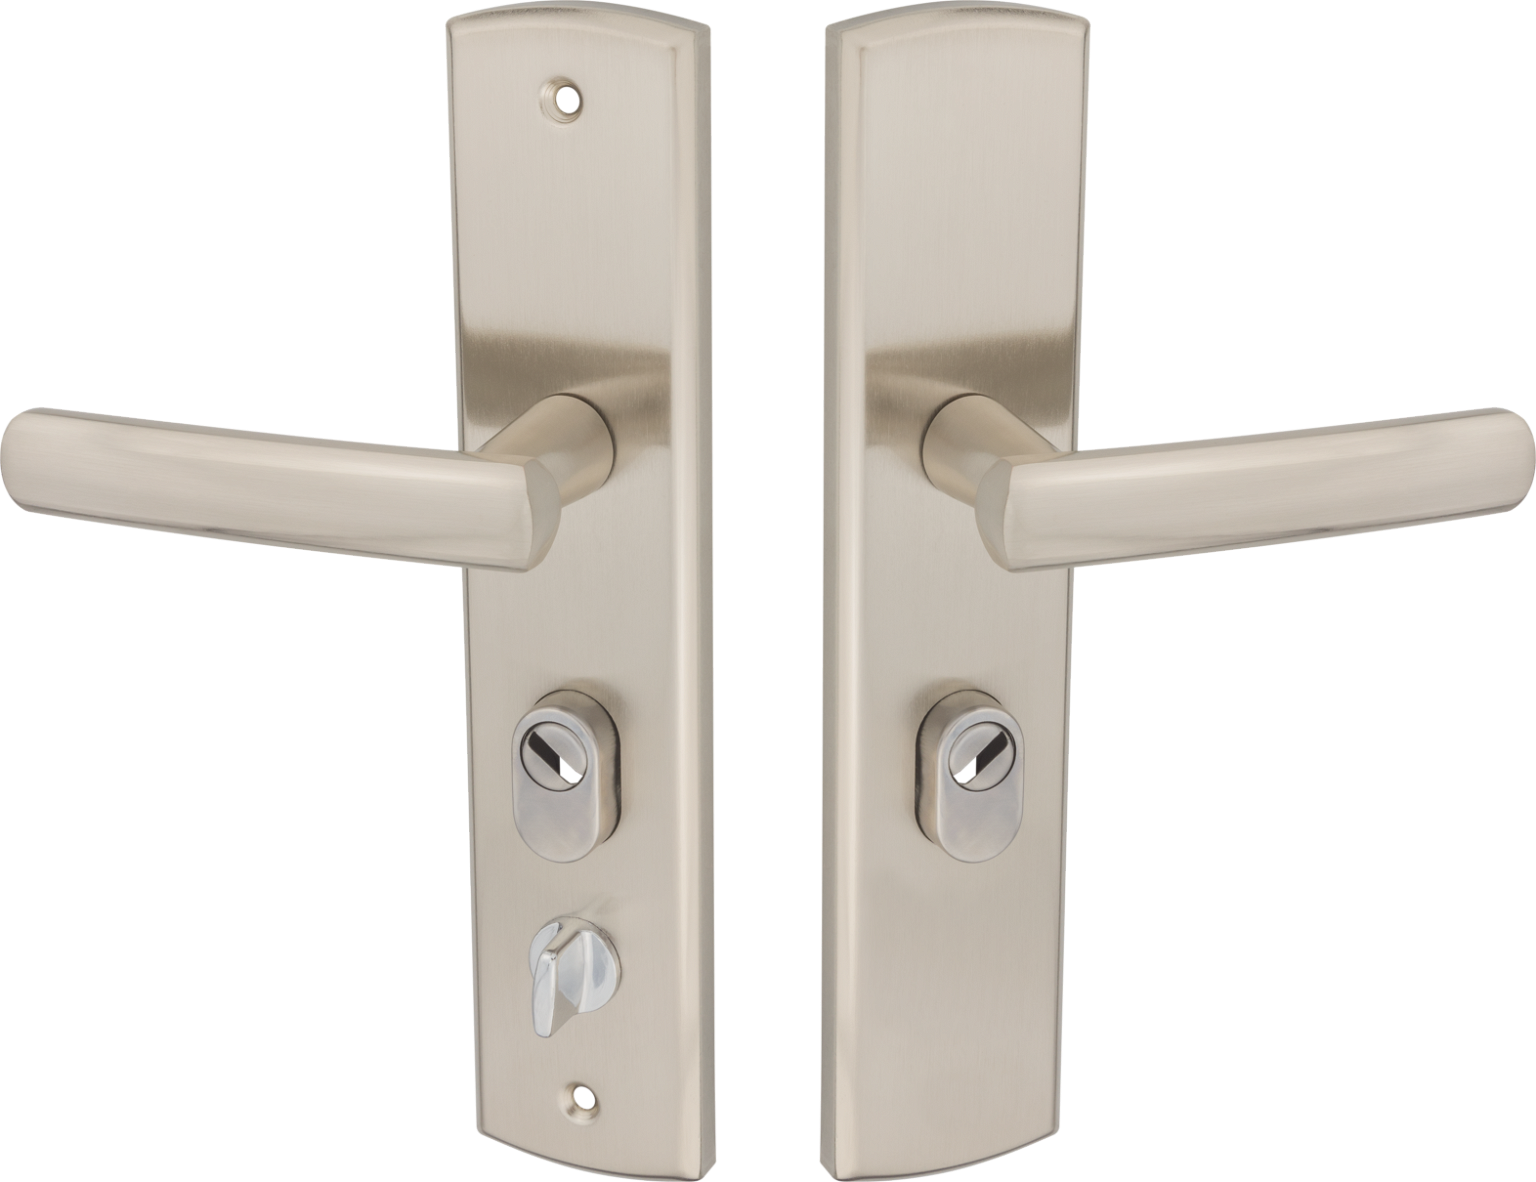 Durų rankena MUSA, įėjimo durims, kvadratinė, su dešininiu užraktu, nikelio spalvos